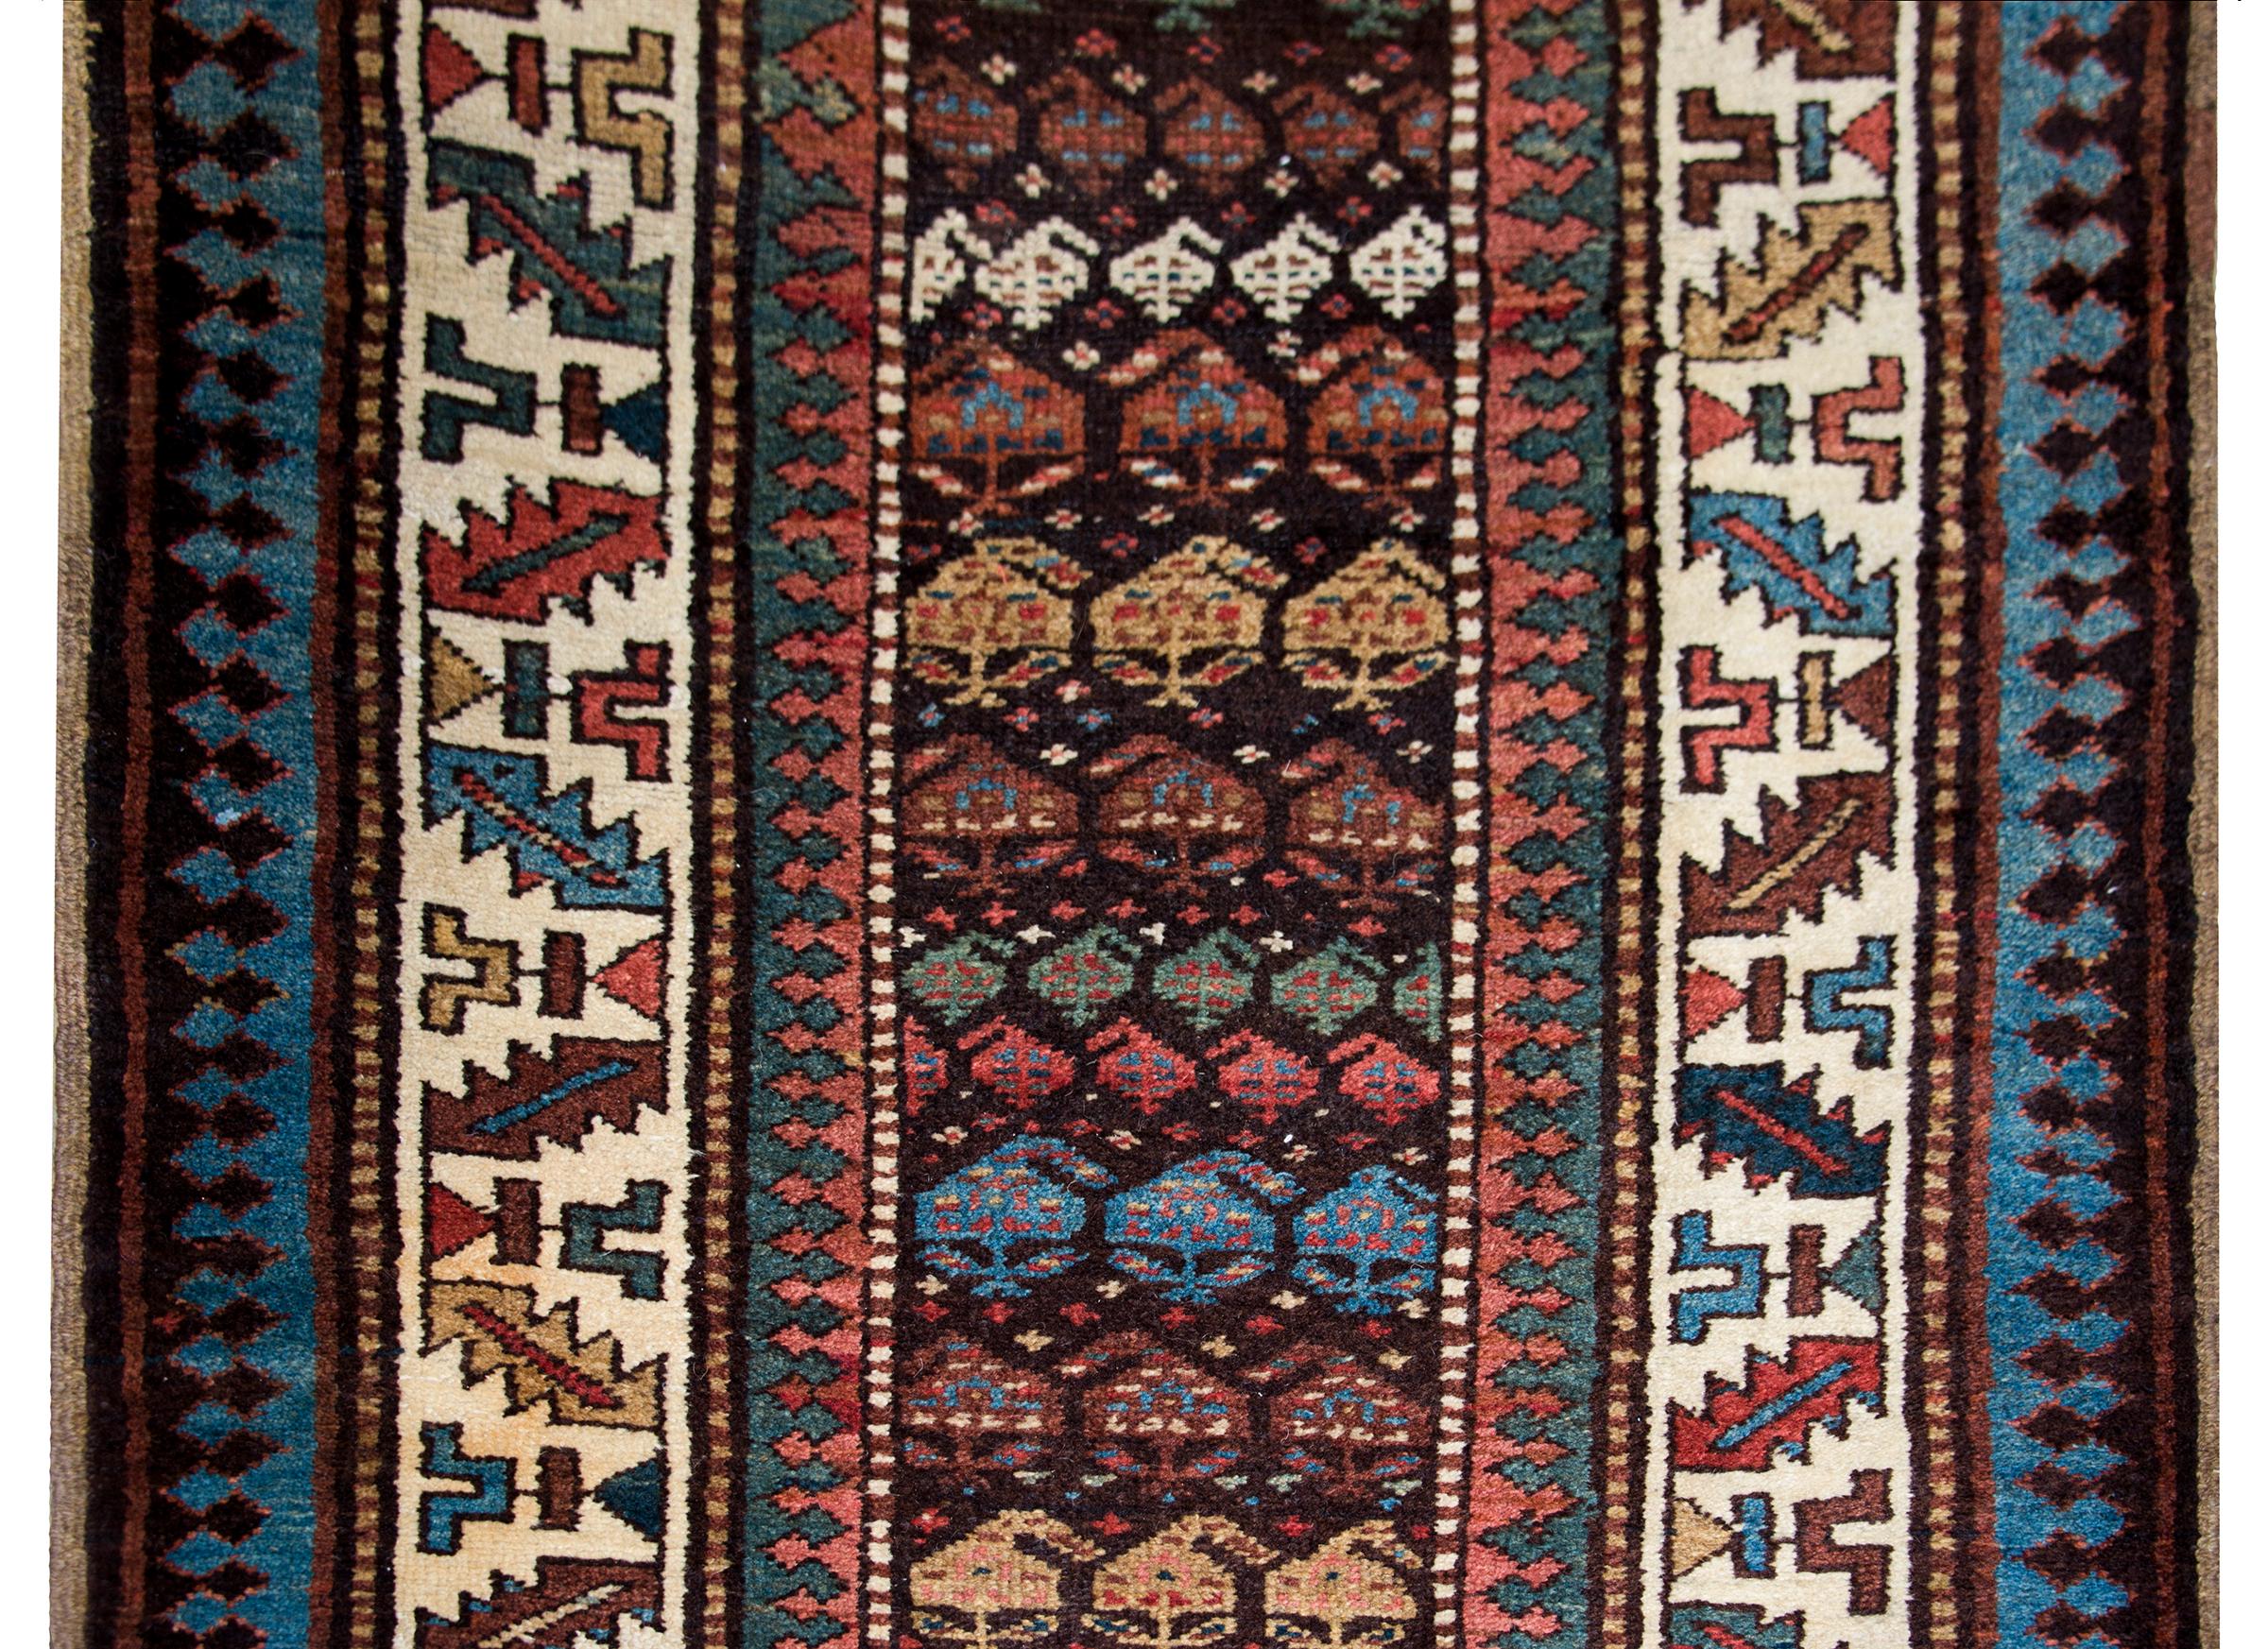 Superbe chemin de table Perse Kuba de la fin du 19e siècle, avec le plus beau motif cachemire tissé dans une myriade de couleurs dont l'indigo, le cramoisi, le jaune, le vert et le brun de la laine, entouré d'une bordure de multiples rayures